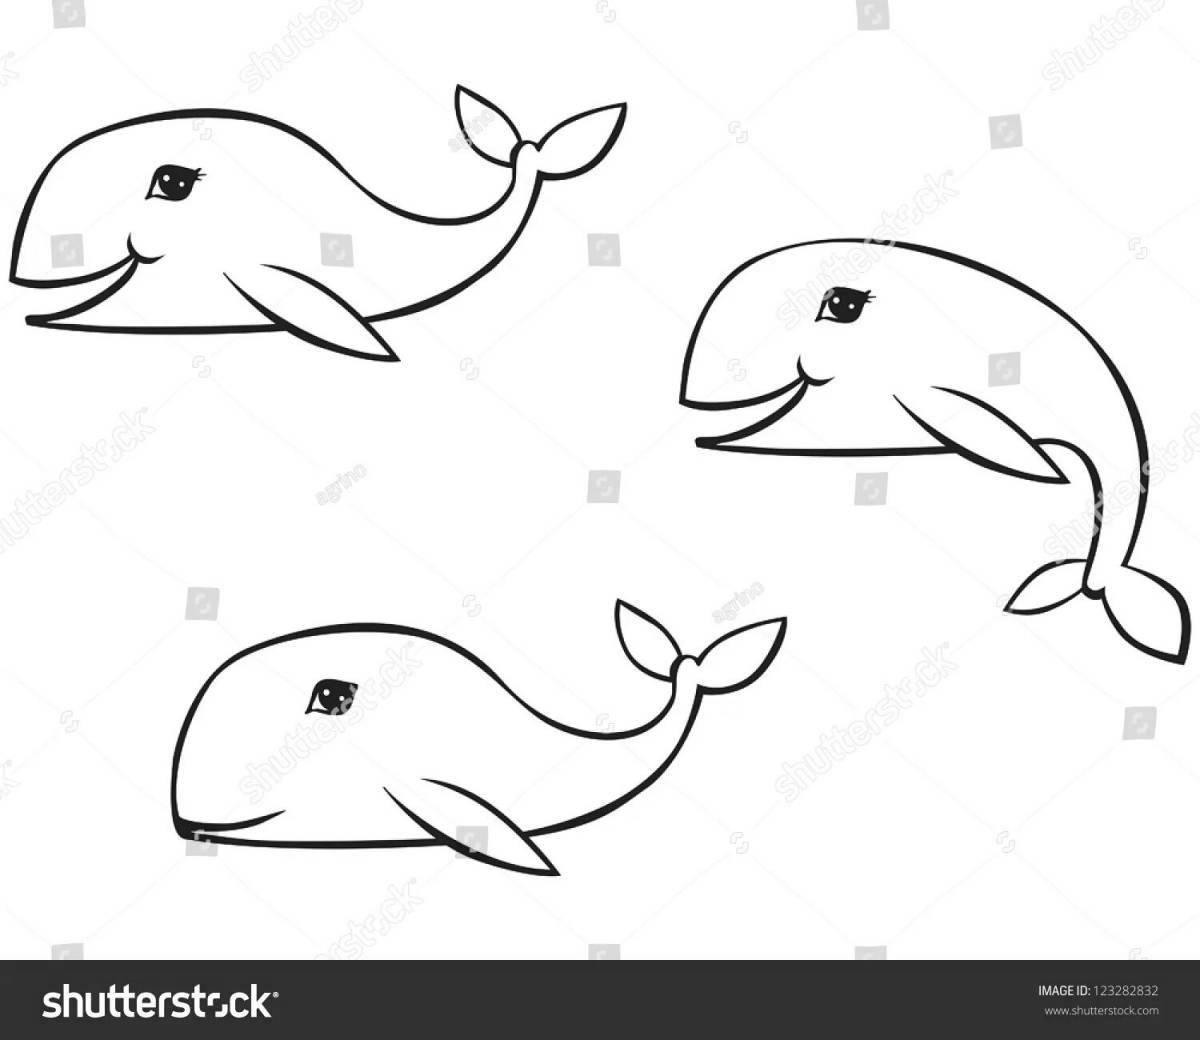 Яркие три кита в музыке раскраски